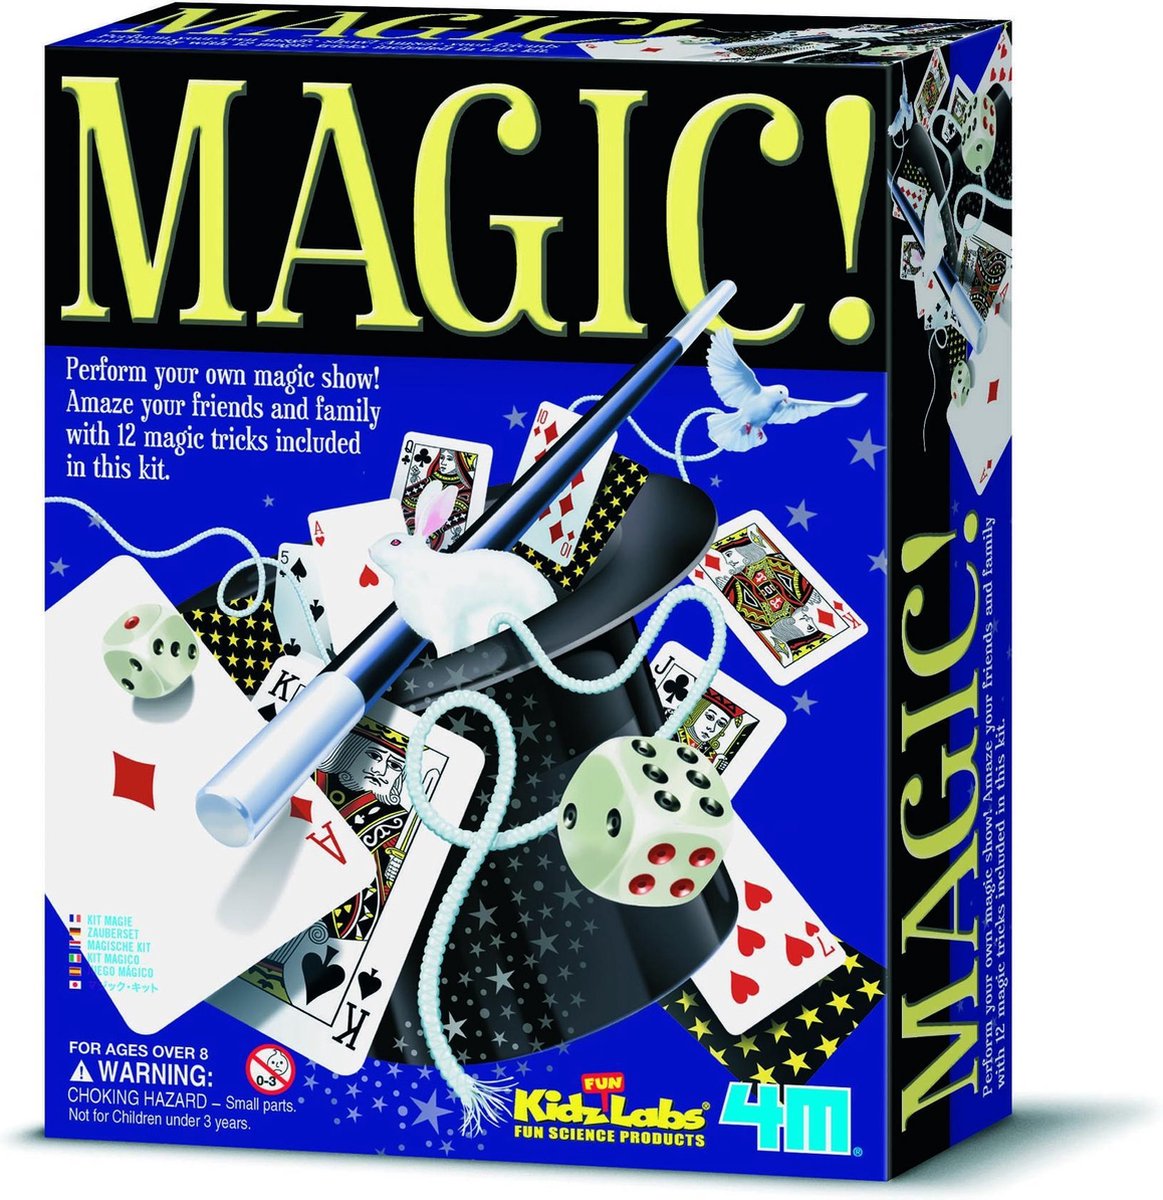 4M Kidzlabs Magic Kit